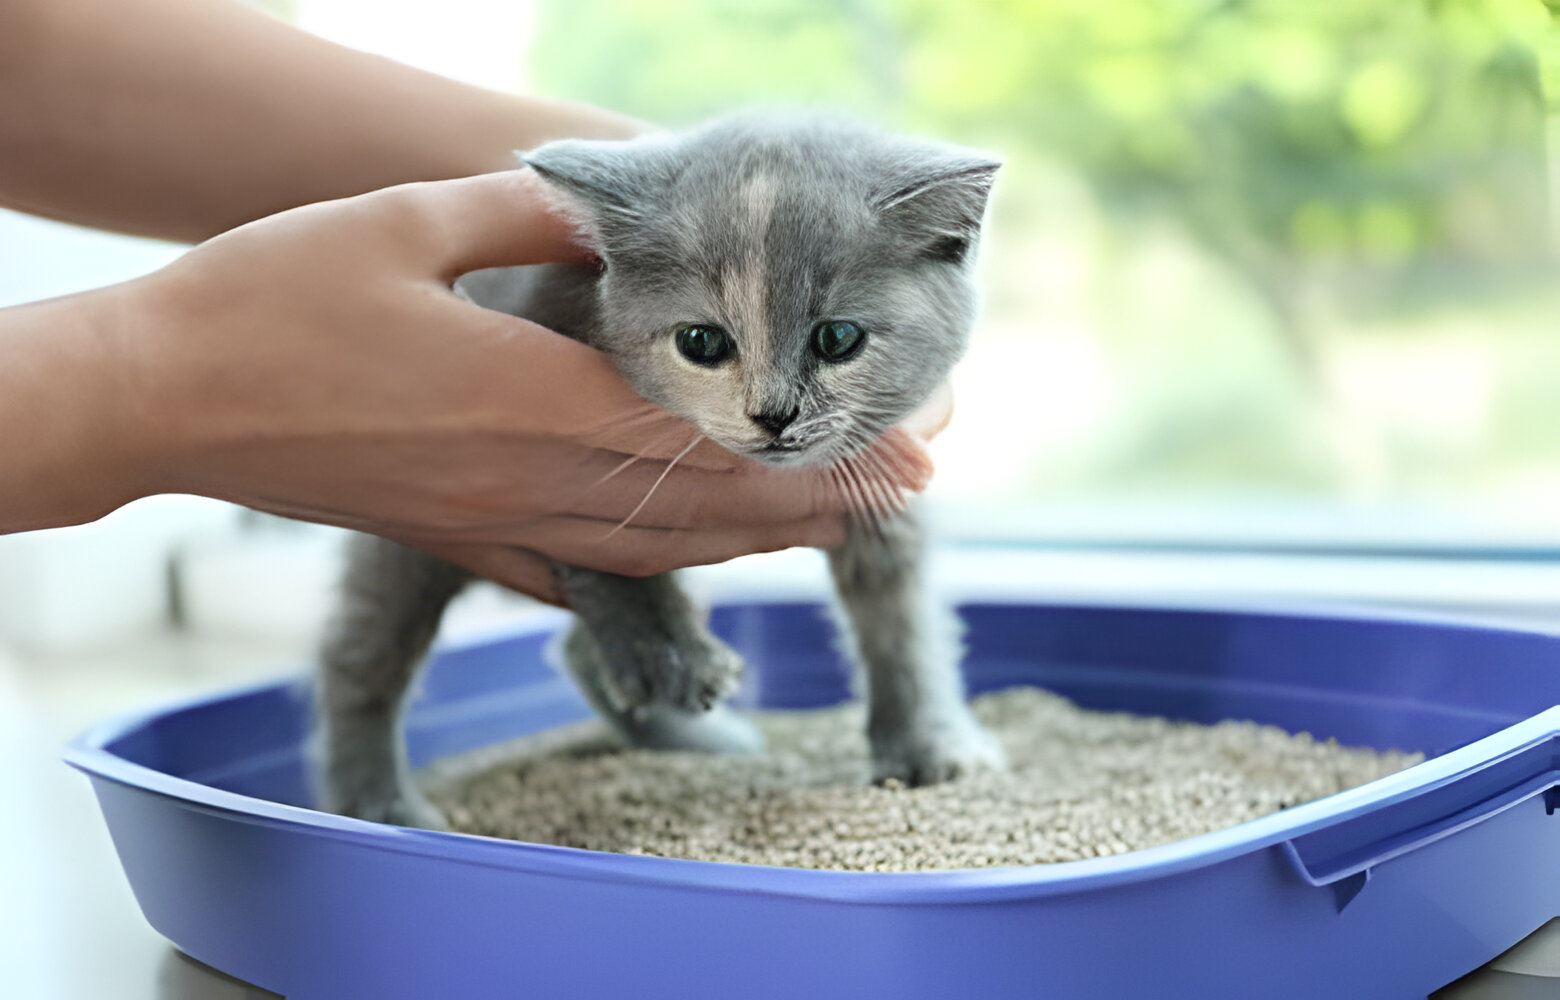 نصائح لتدريب قطتك الصغيرة على استخدام صندوق الرمل